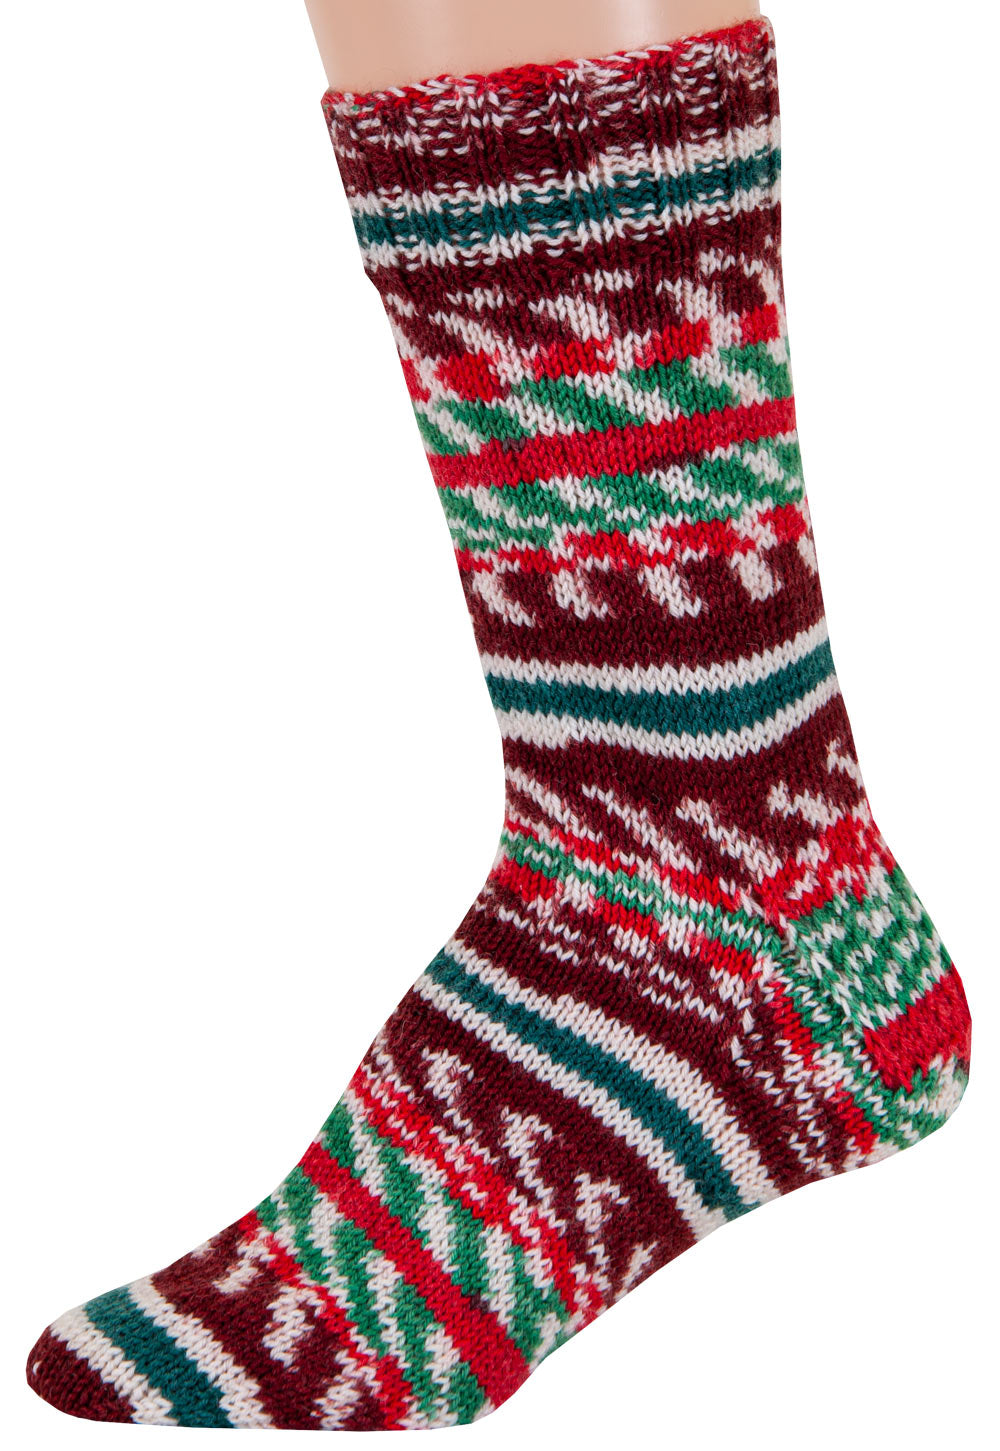 Mary Maxim Festive Feet Sock Yarn, Happy Holiday